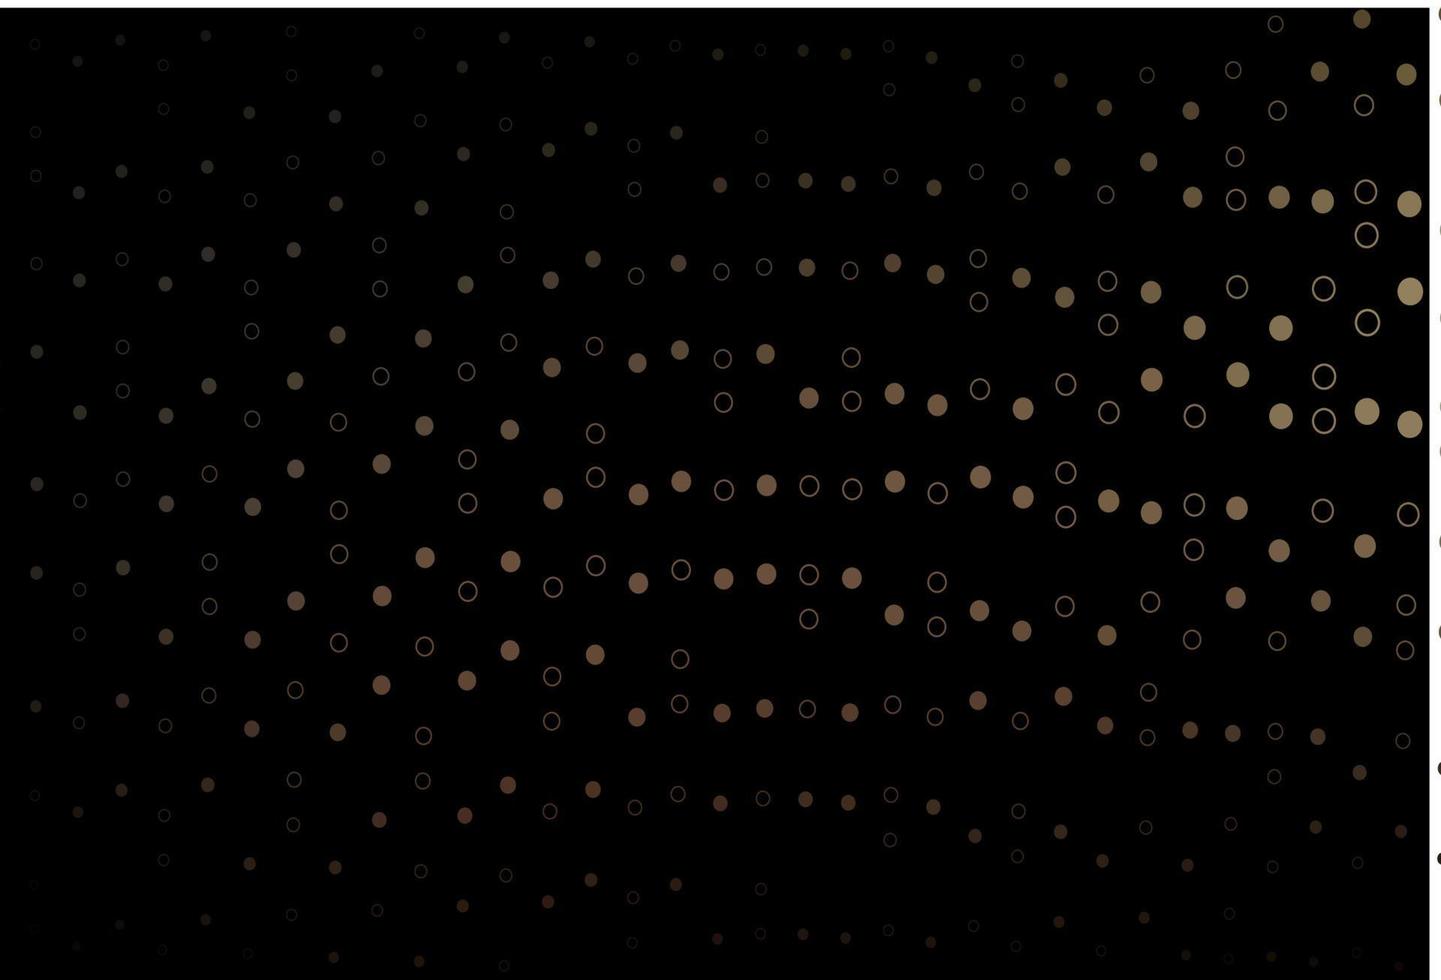 cenário de vetor preto escuro com pontos.